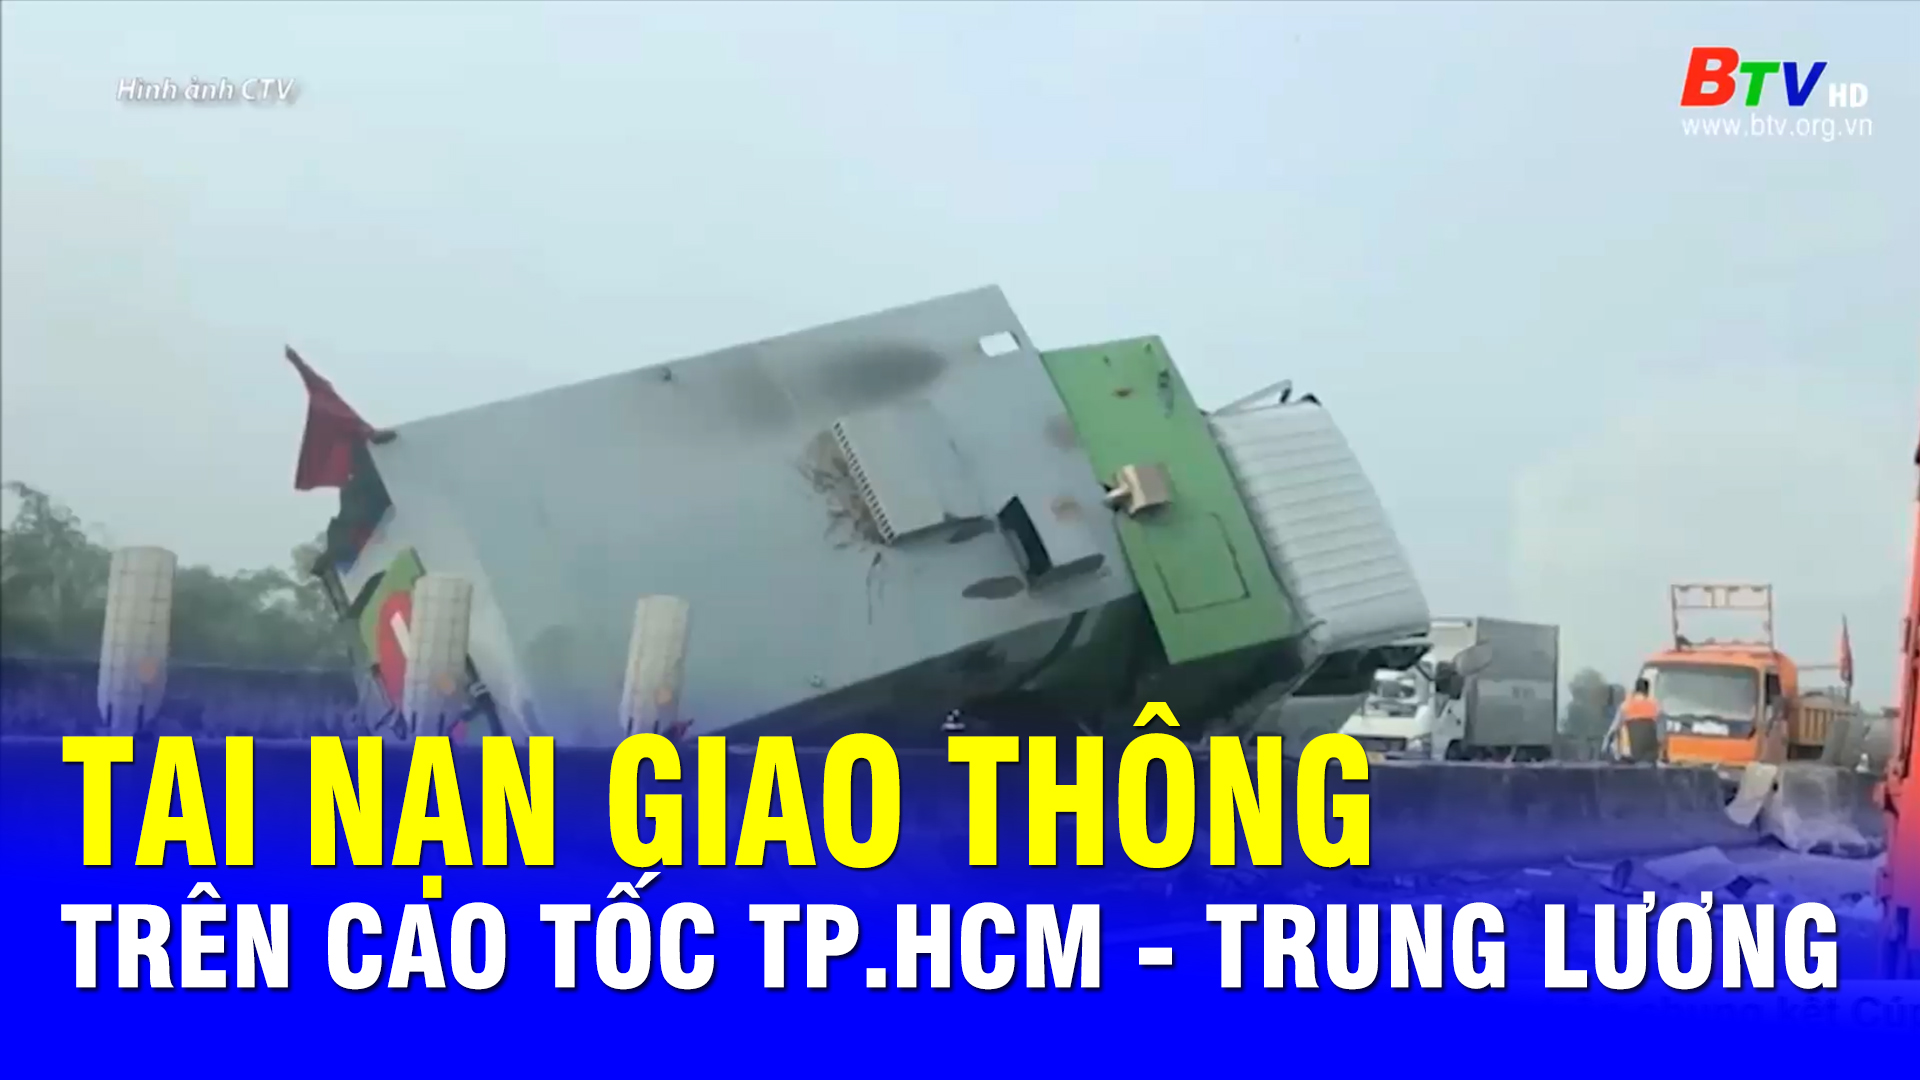 Tai nạn giao thông trên cao tốc TP.HCM - Trung Lương